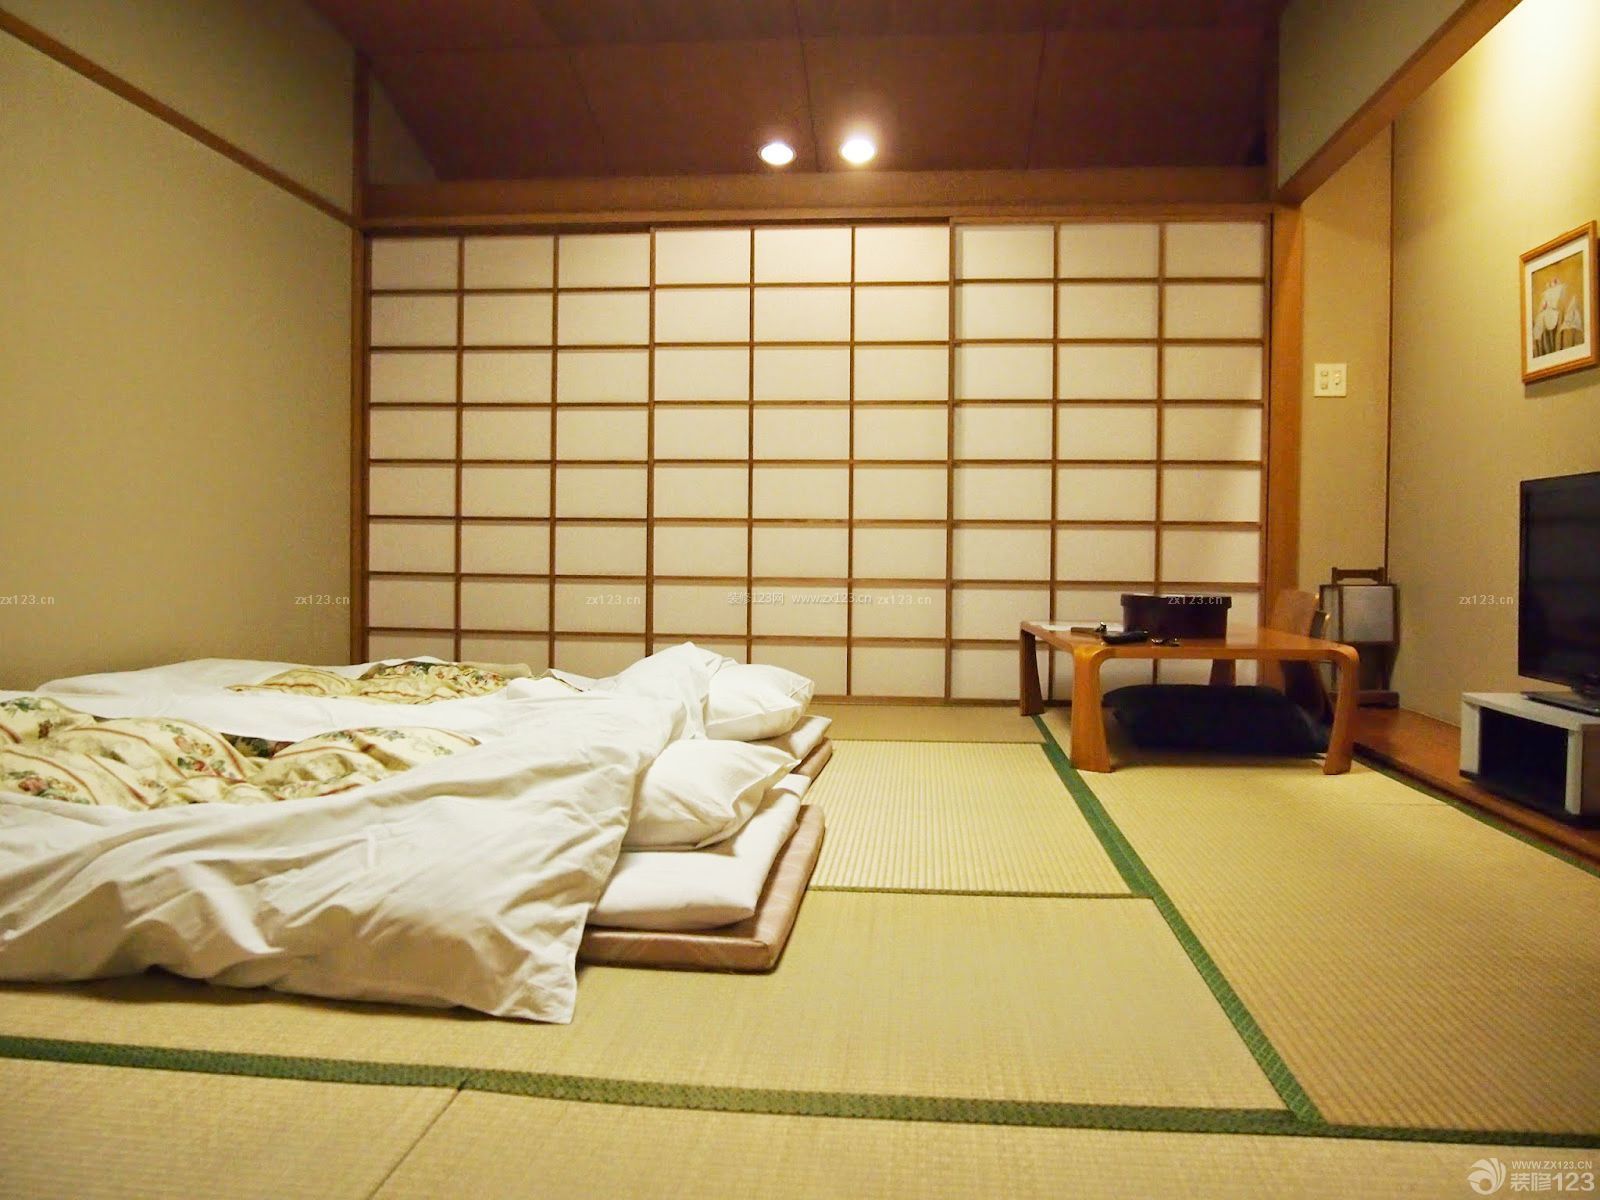 90平米日式小房间榻榻米装修效果图